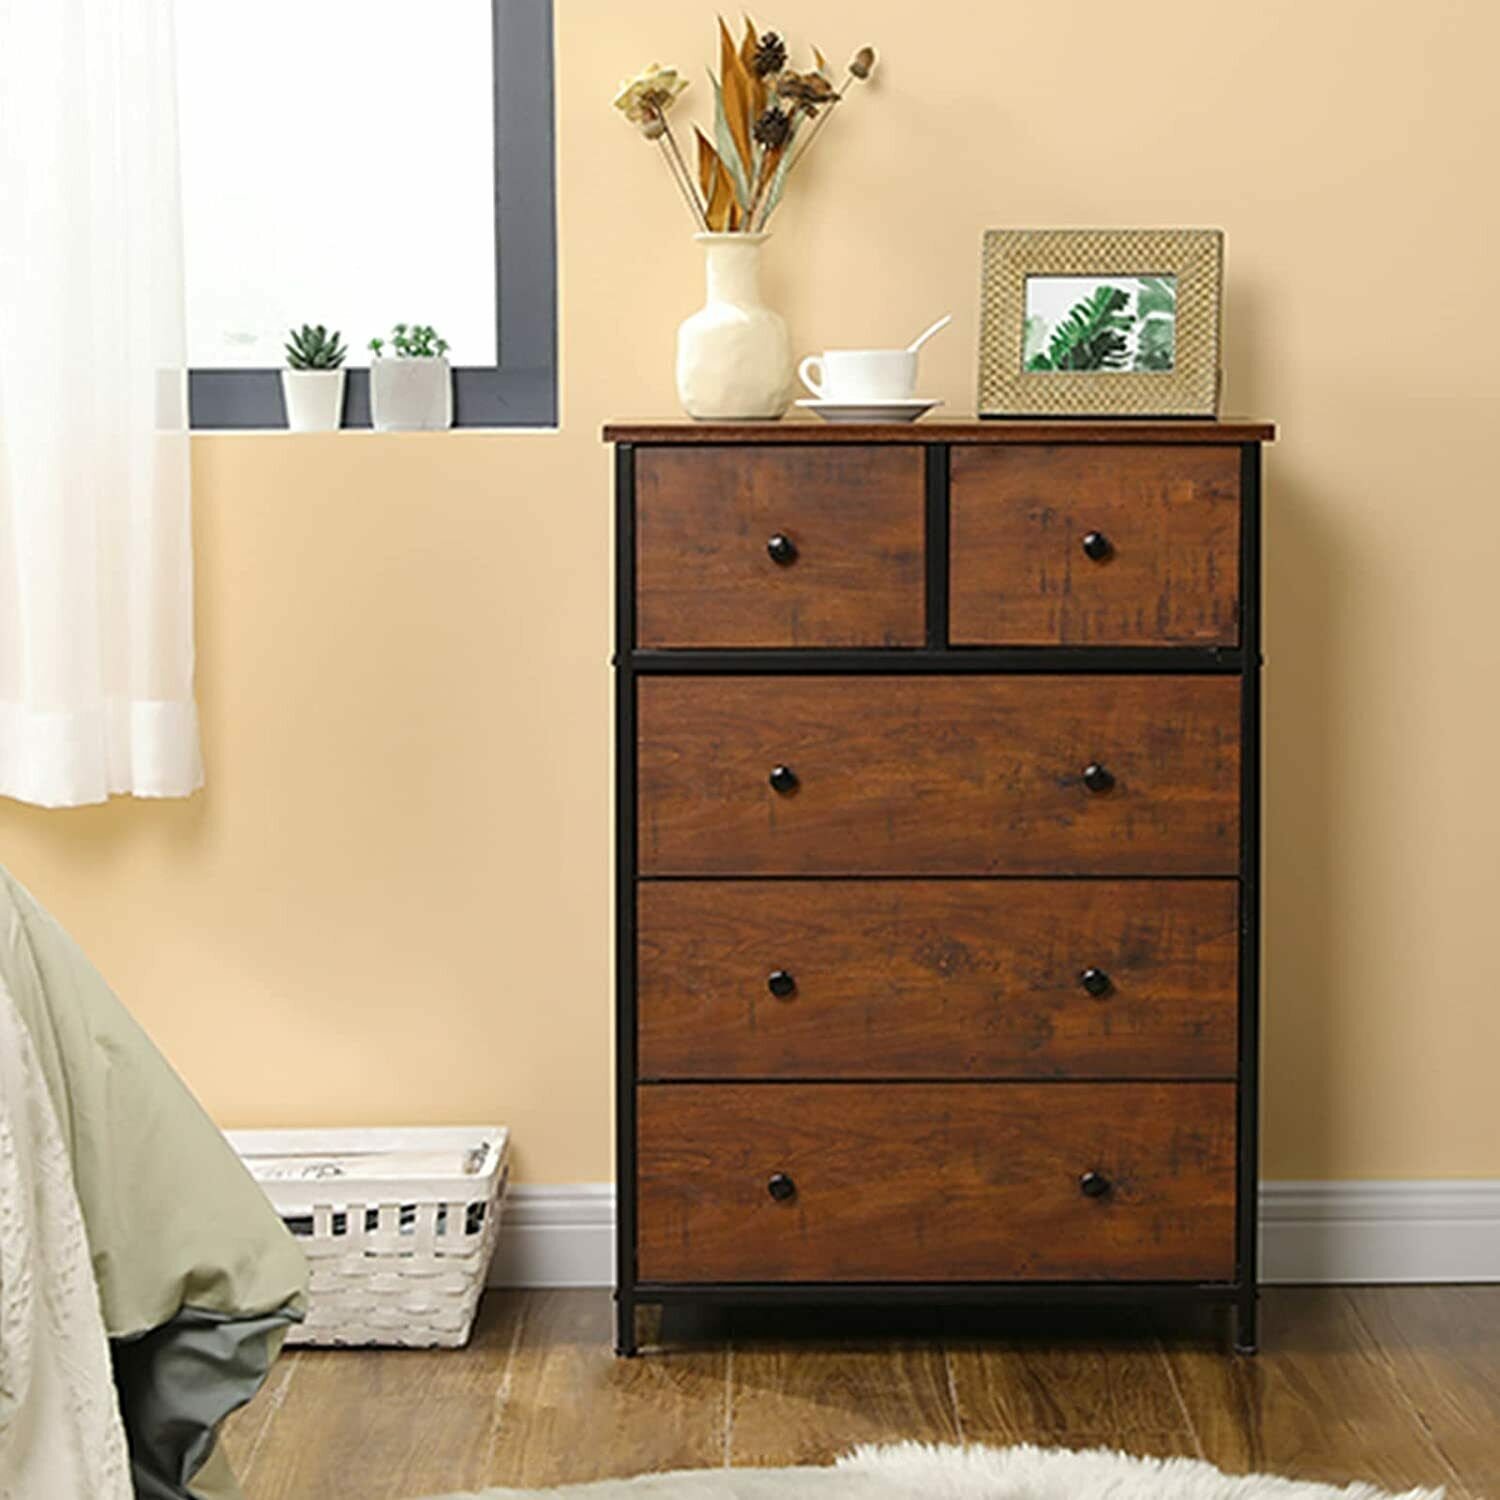 USA Dresser 5 Drawer Bedroom Furniture Storage Chest Organizer Closet Cabinet